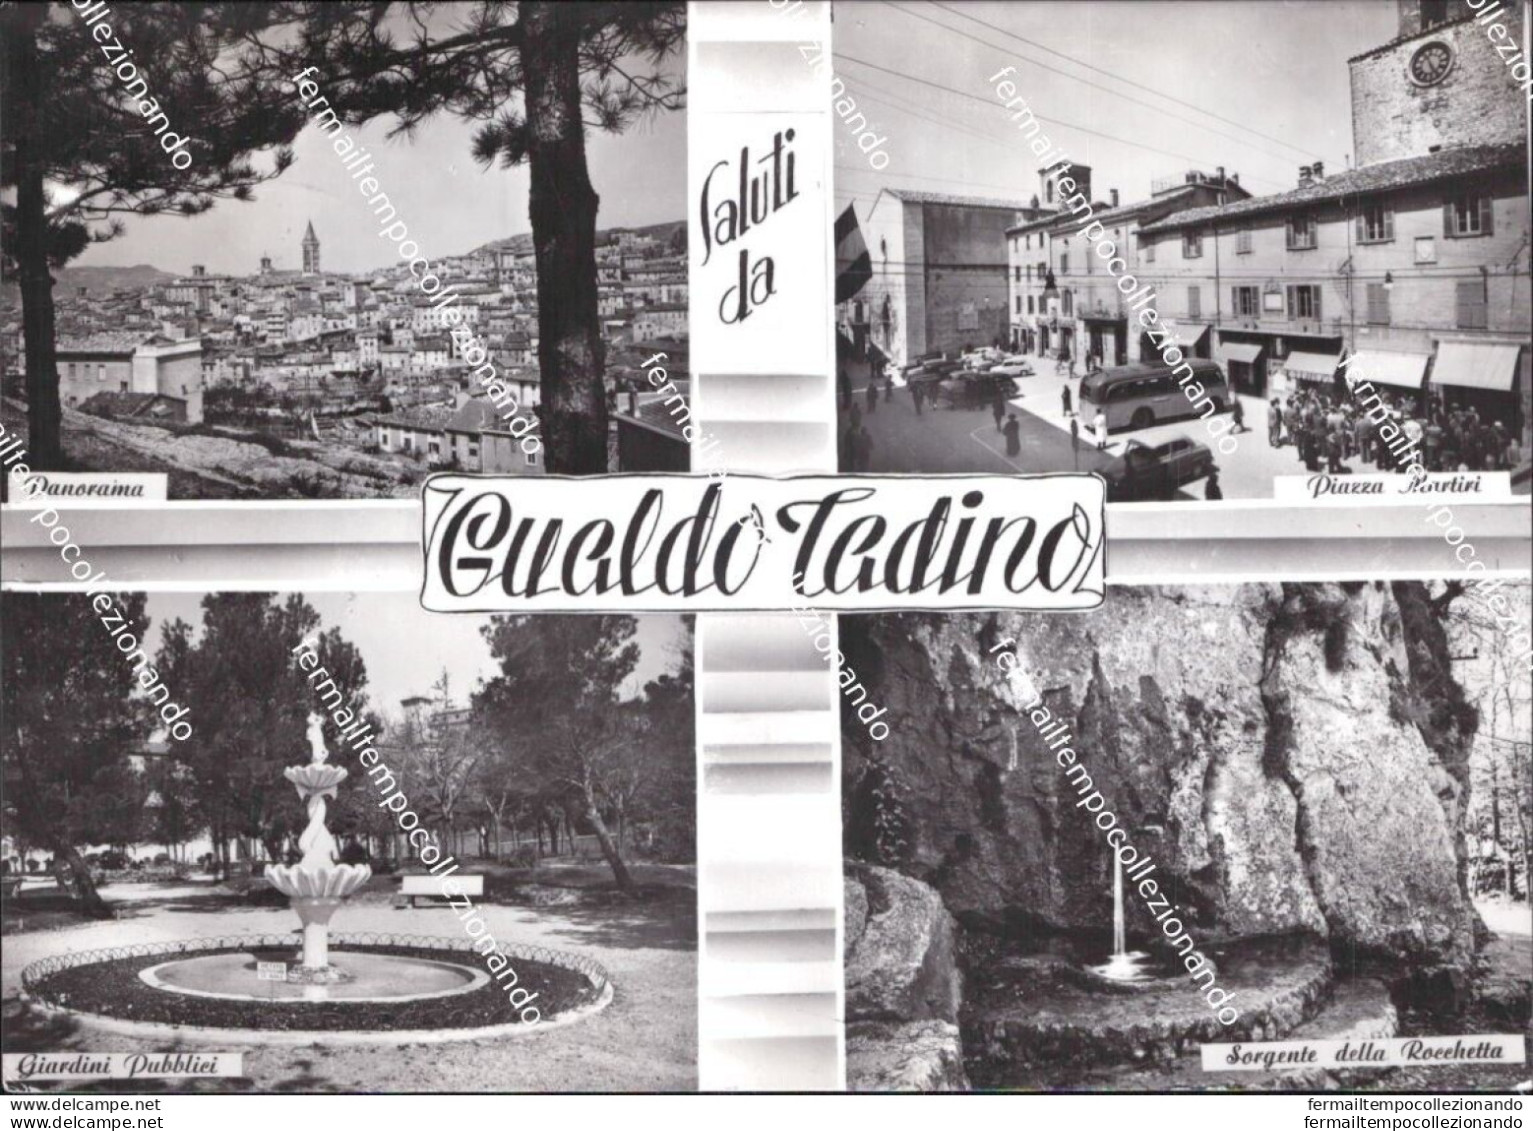 Al810 Cartolina Saluti Da Gualdo Tadino Provincia Di Perugia Umbria - Perugia